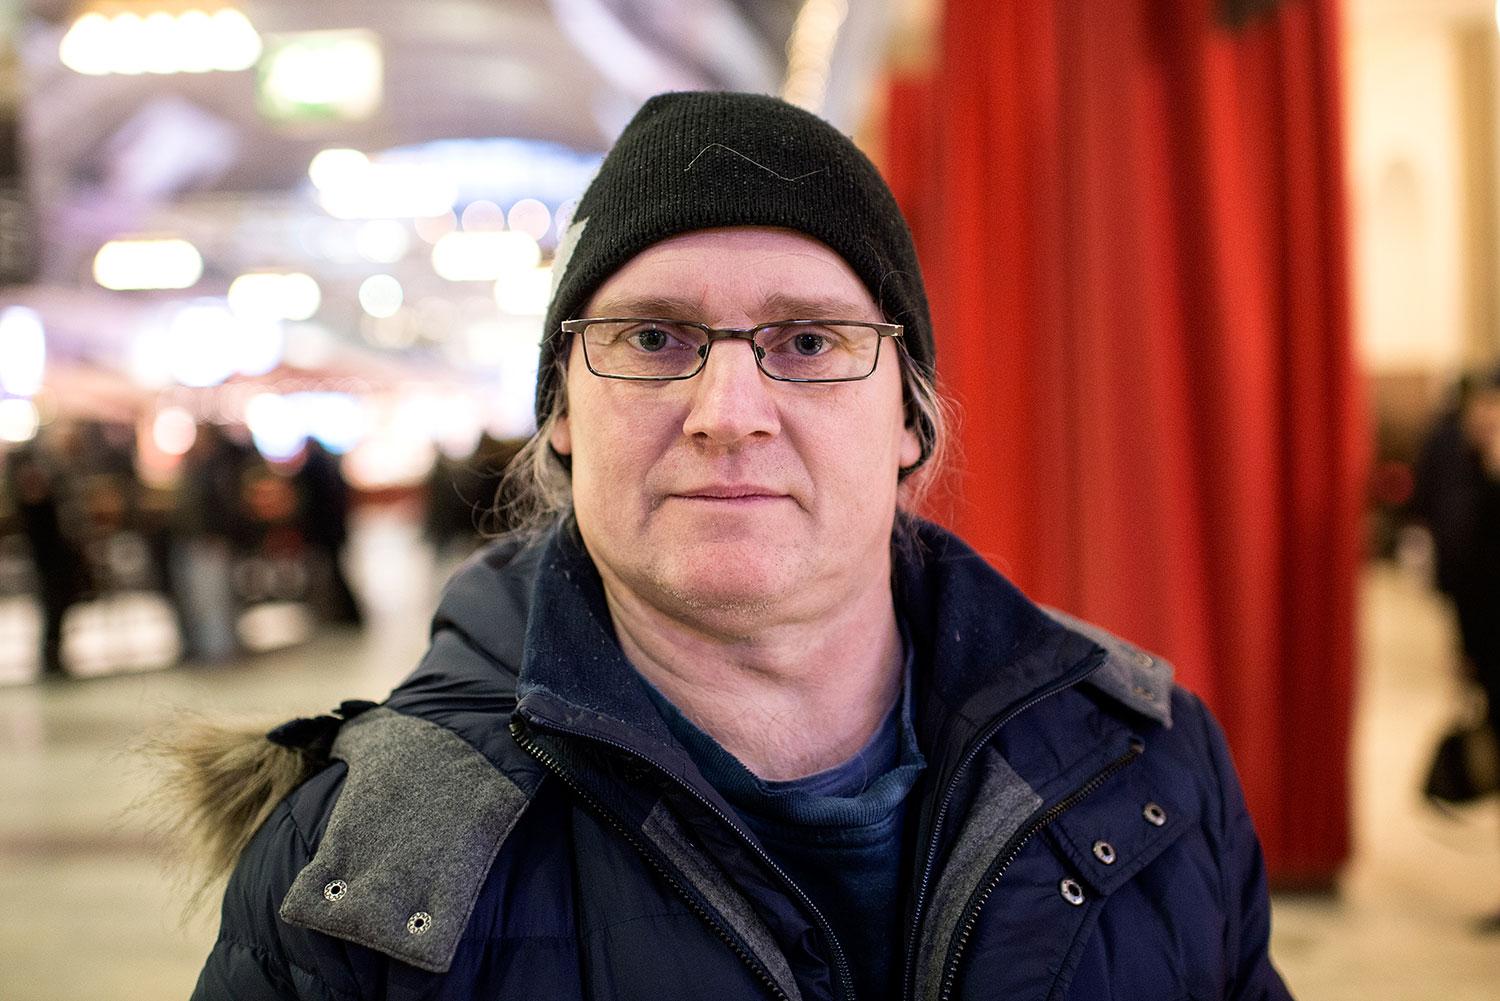 Björn Fernström, 52, postman, Trollhättan:
– Nej, det hade varit bättre för demokratin om man fått rösta igen. Man hade fått en ny spelplan.